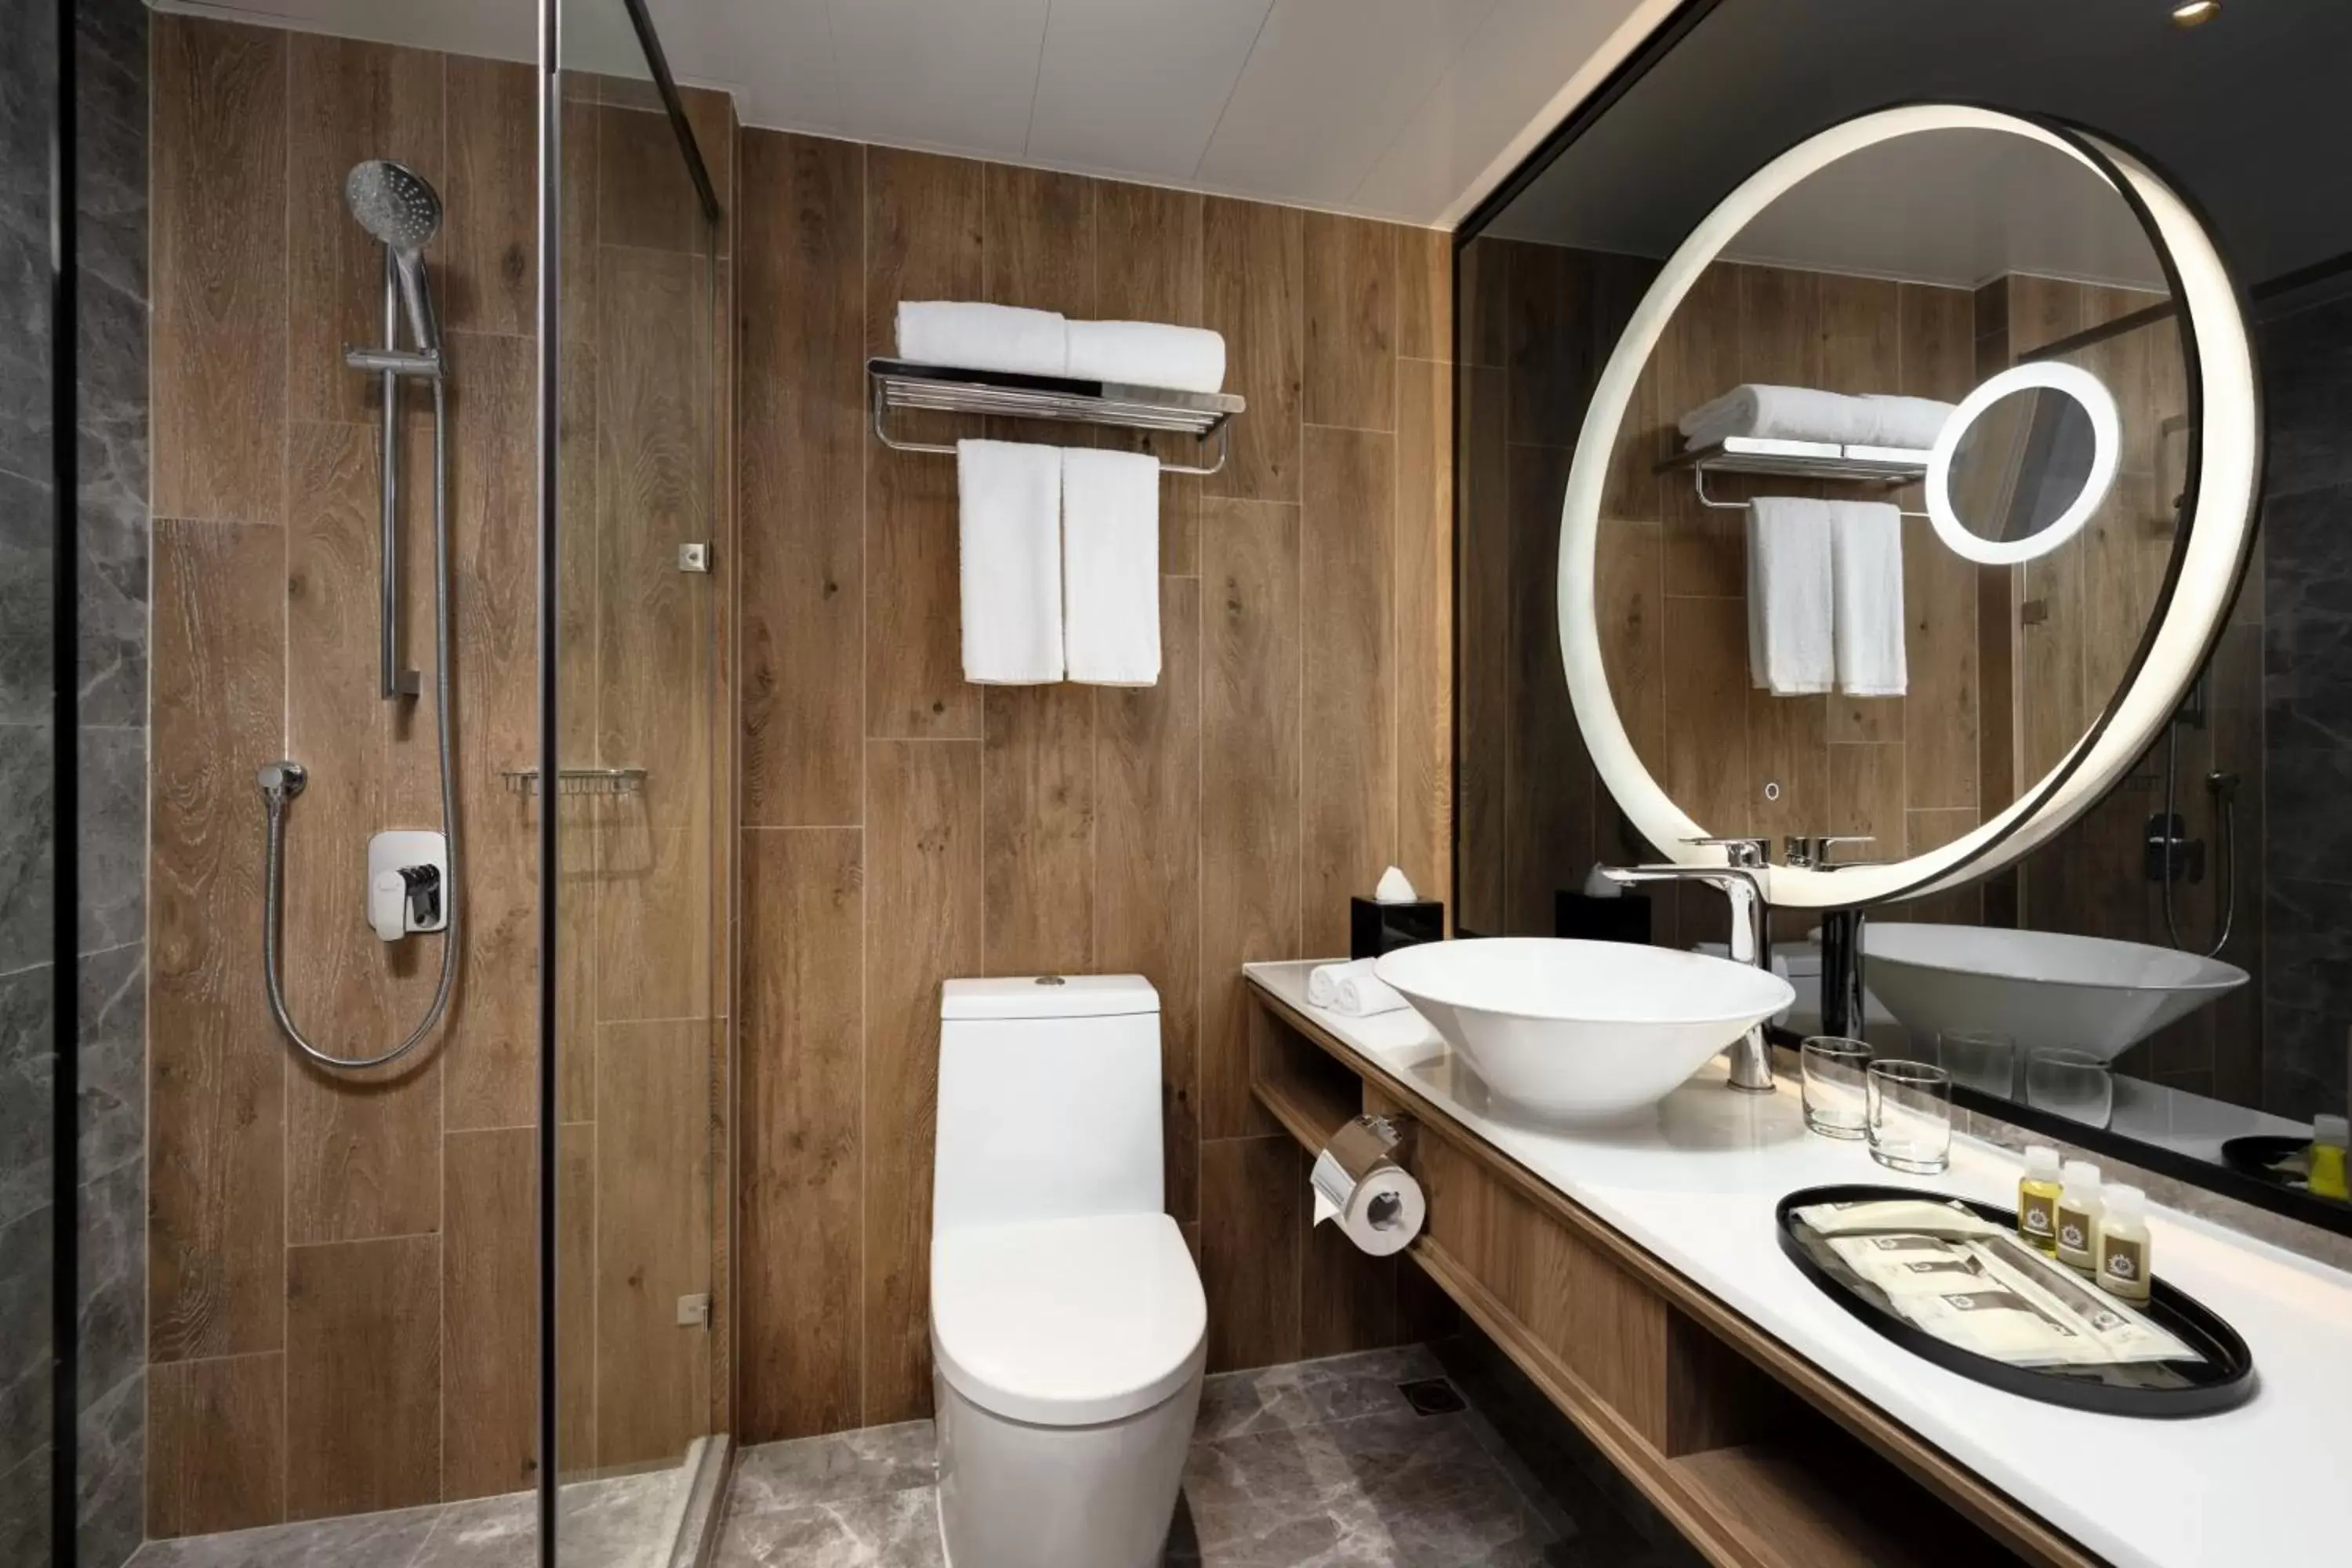 Bathroom in Park Hotel Hong Kong